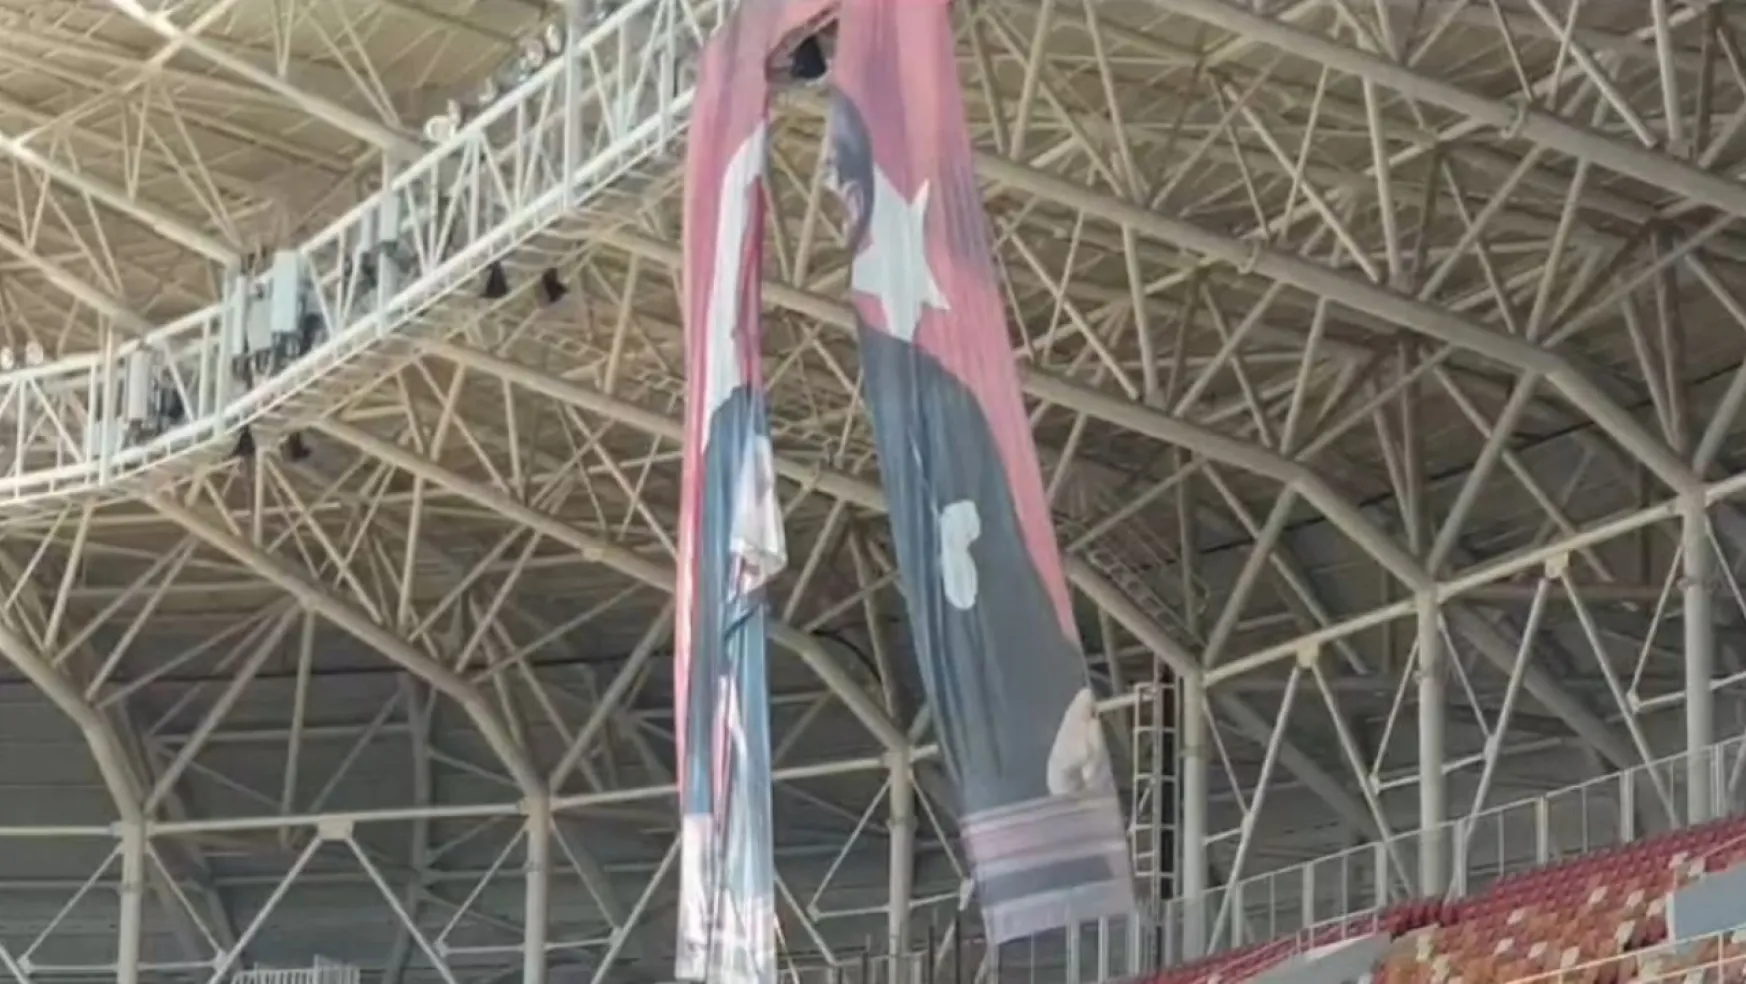 Başkan Yıldız,Mustafa Kemal Atatürk'ün posteri yırtık bir şekilde Malatya stadyumunda asılı duruyor